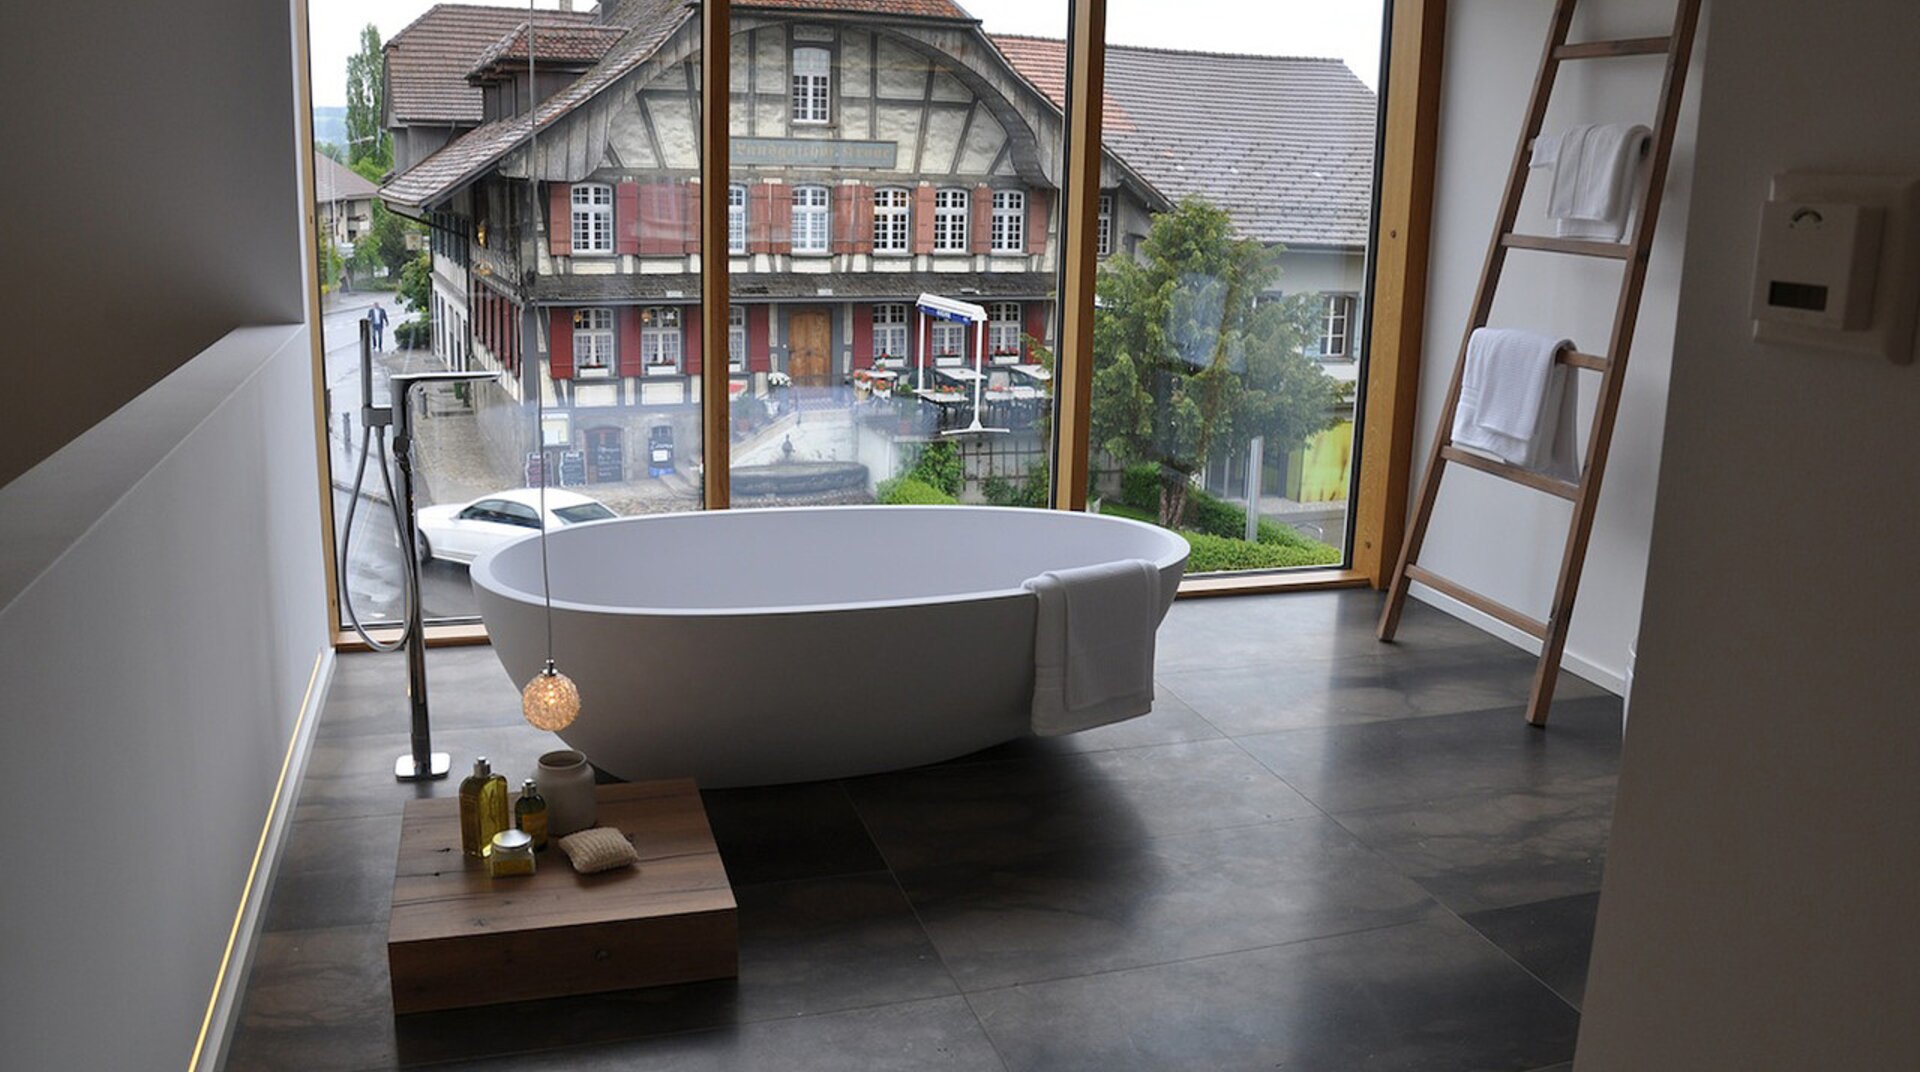 Utendorf, Badezimmer, Badewanne freistehend, Hintergrund durch bodentiefe Fenster Blick auf gegenüberliegendes Fachwerkhaus